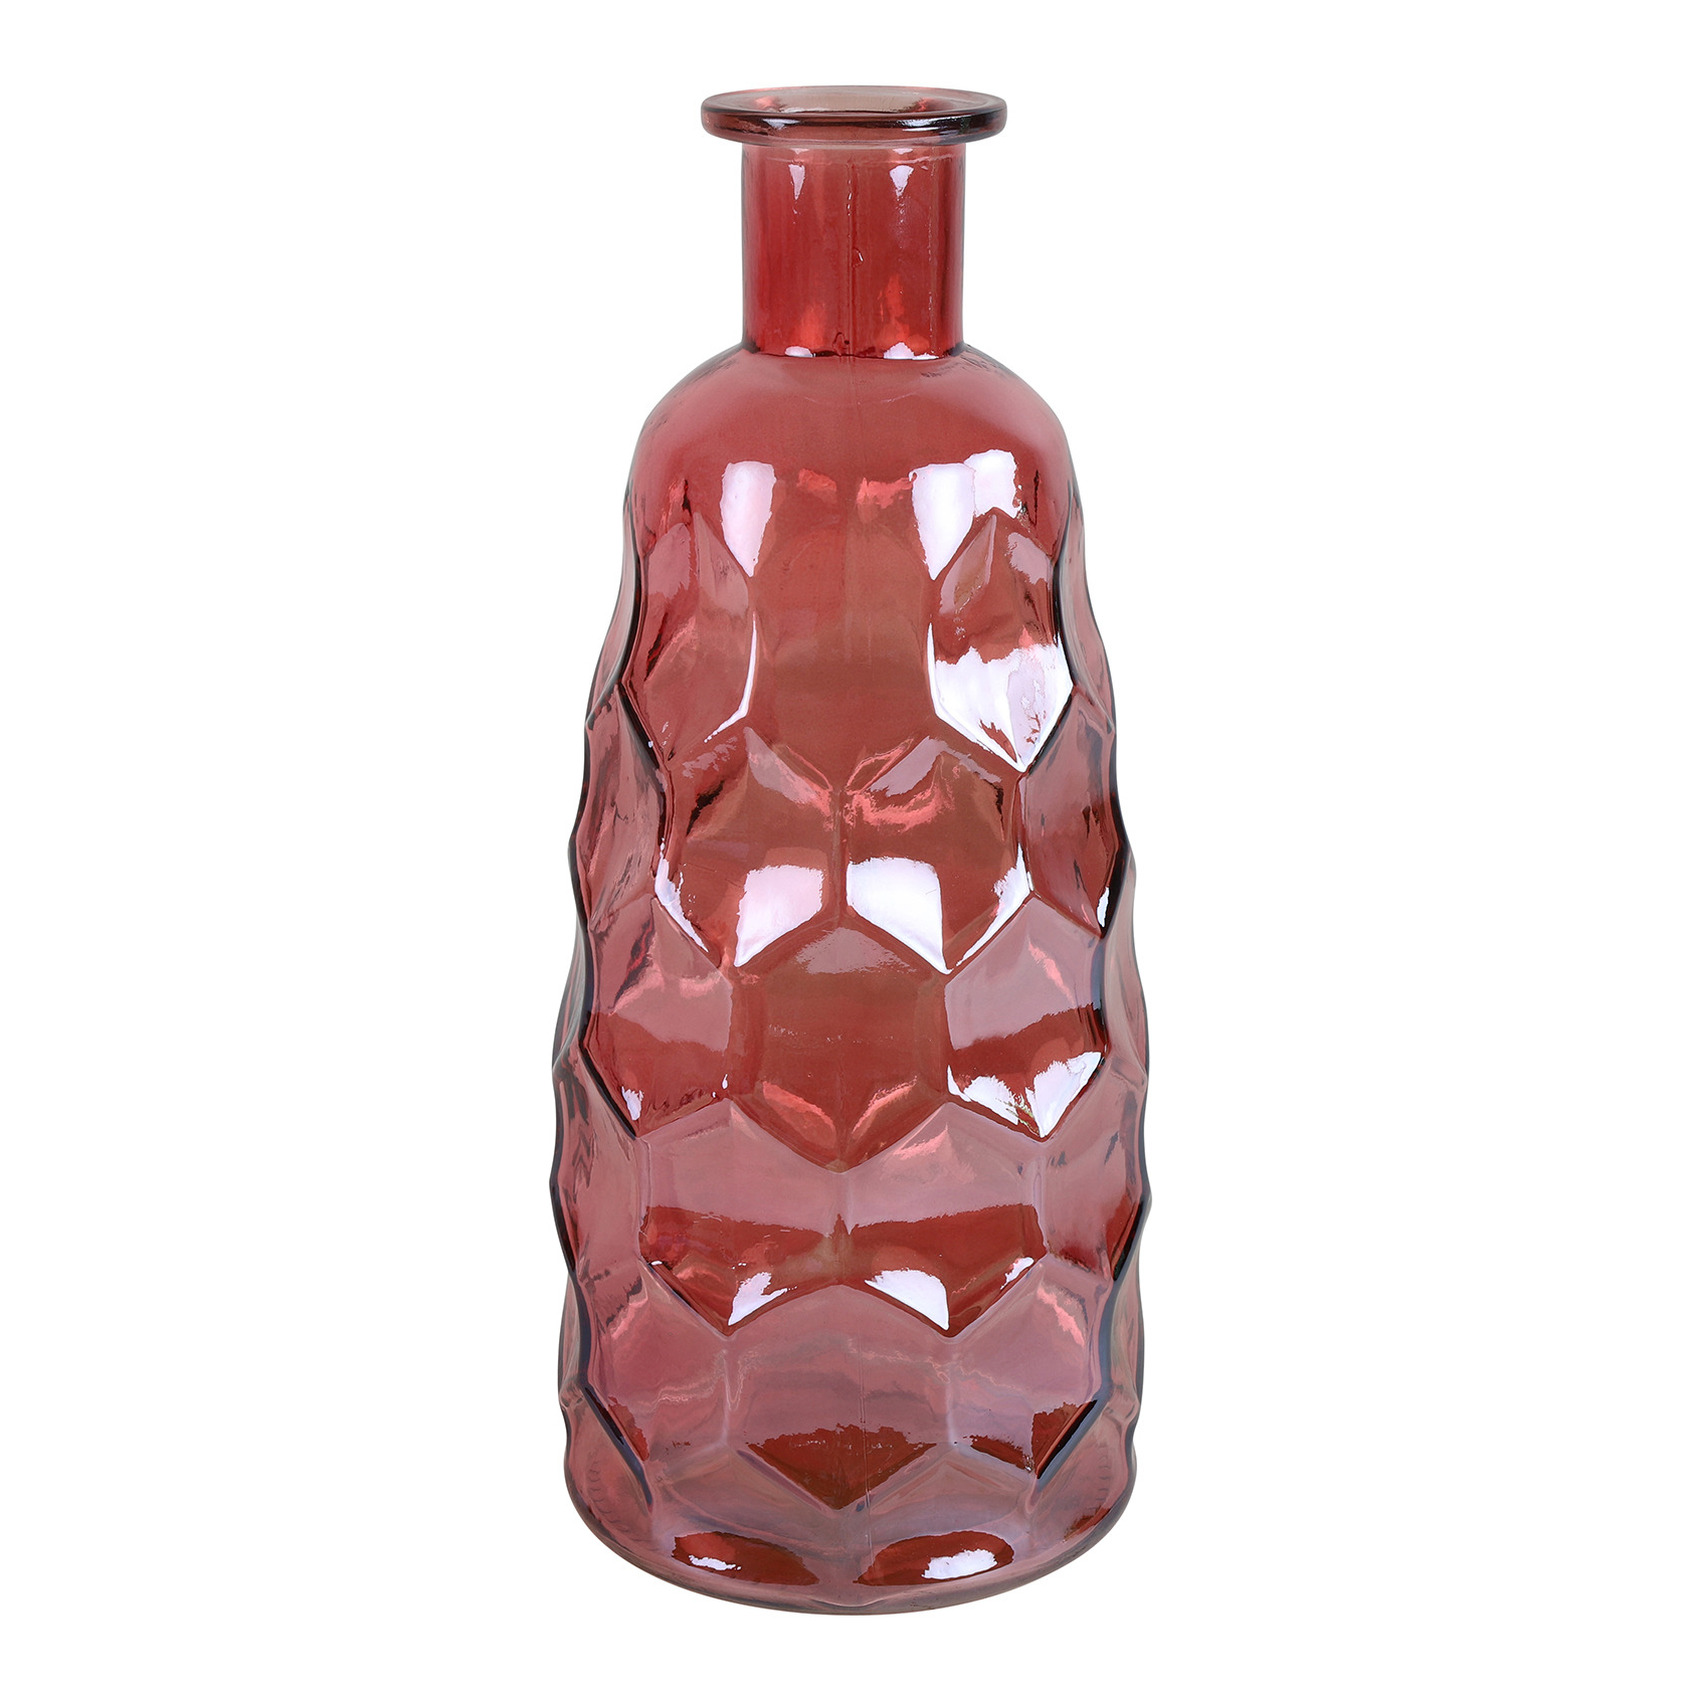 Countryfield Art Deco bloemenvaas - donkerroze transparant - glas - fles vorm - D12 x H30 cm -